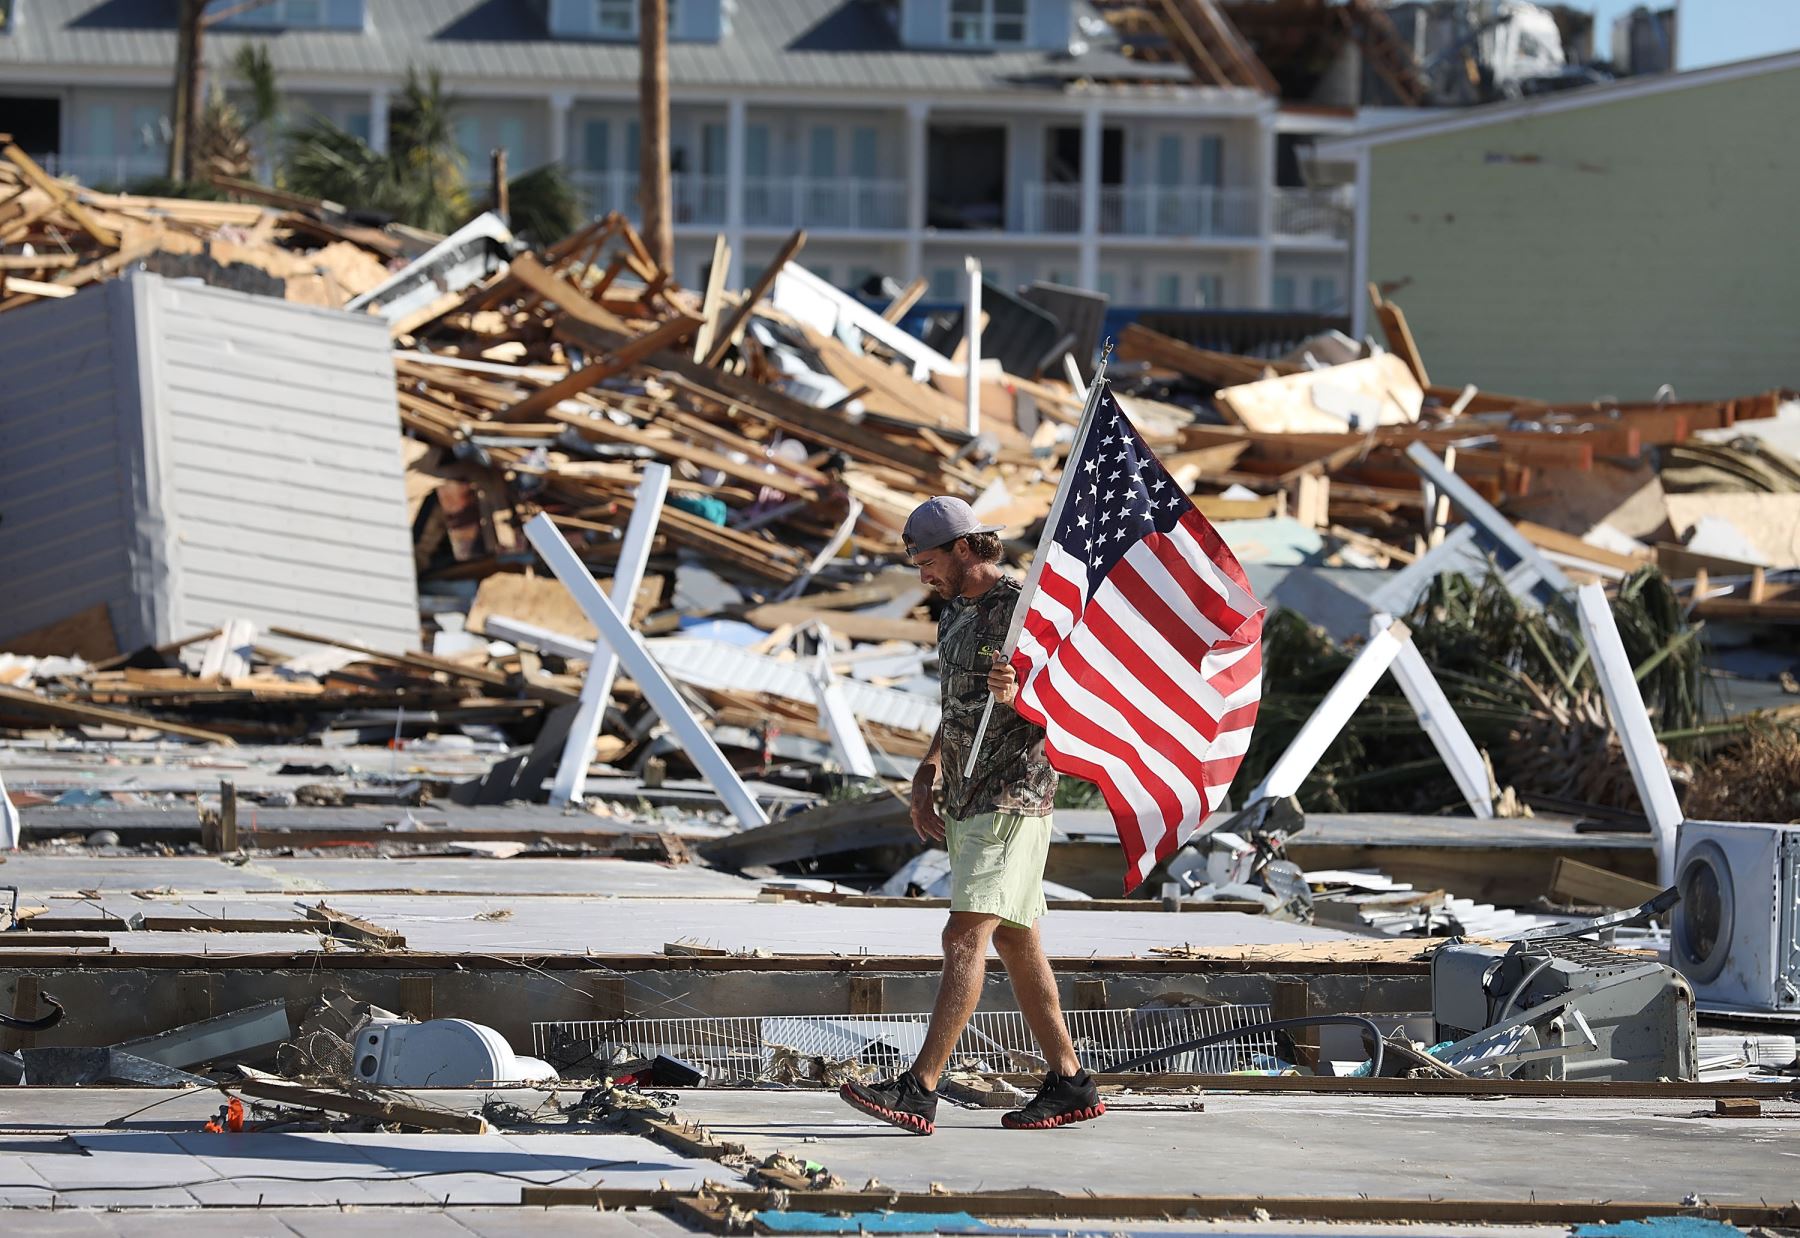 Kevin Guaranta lleva una bandera estadounidense que encontró mientras caminaba sobre los cimientos de las casas que fueron demolidas cuando el huracán Michael atravesó el área el 12 de octubre de 2018 en Mexico Beach, Florida. El huracán golpeó el área de los mangos con vientos de categoría 4 que causaron daños mayores. AFP